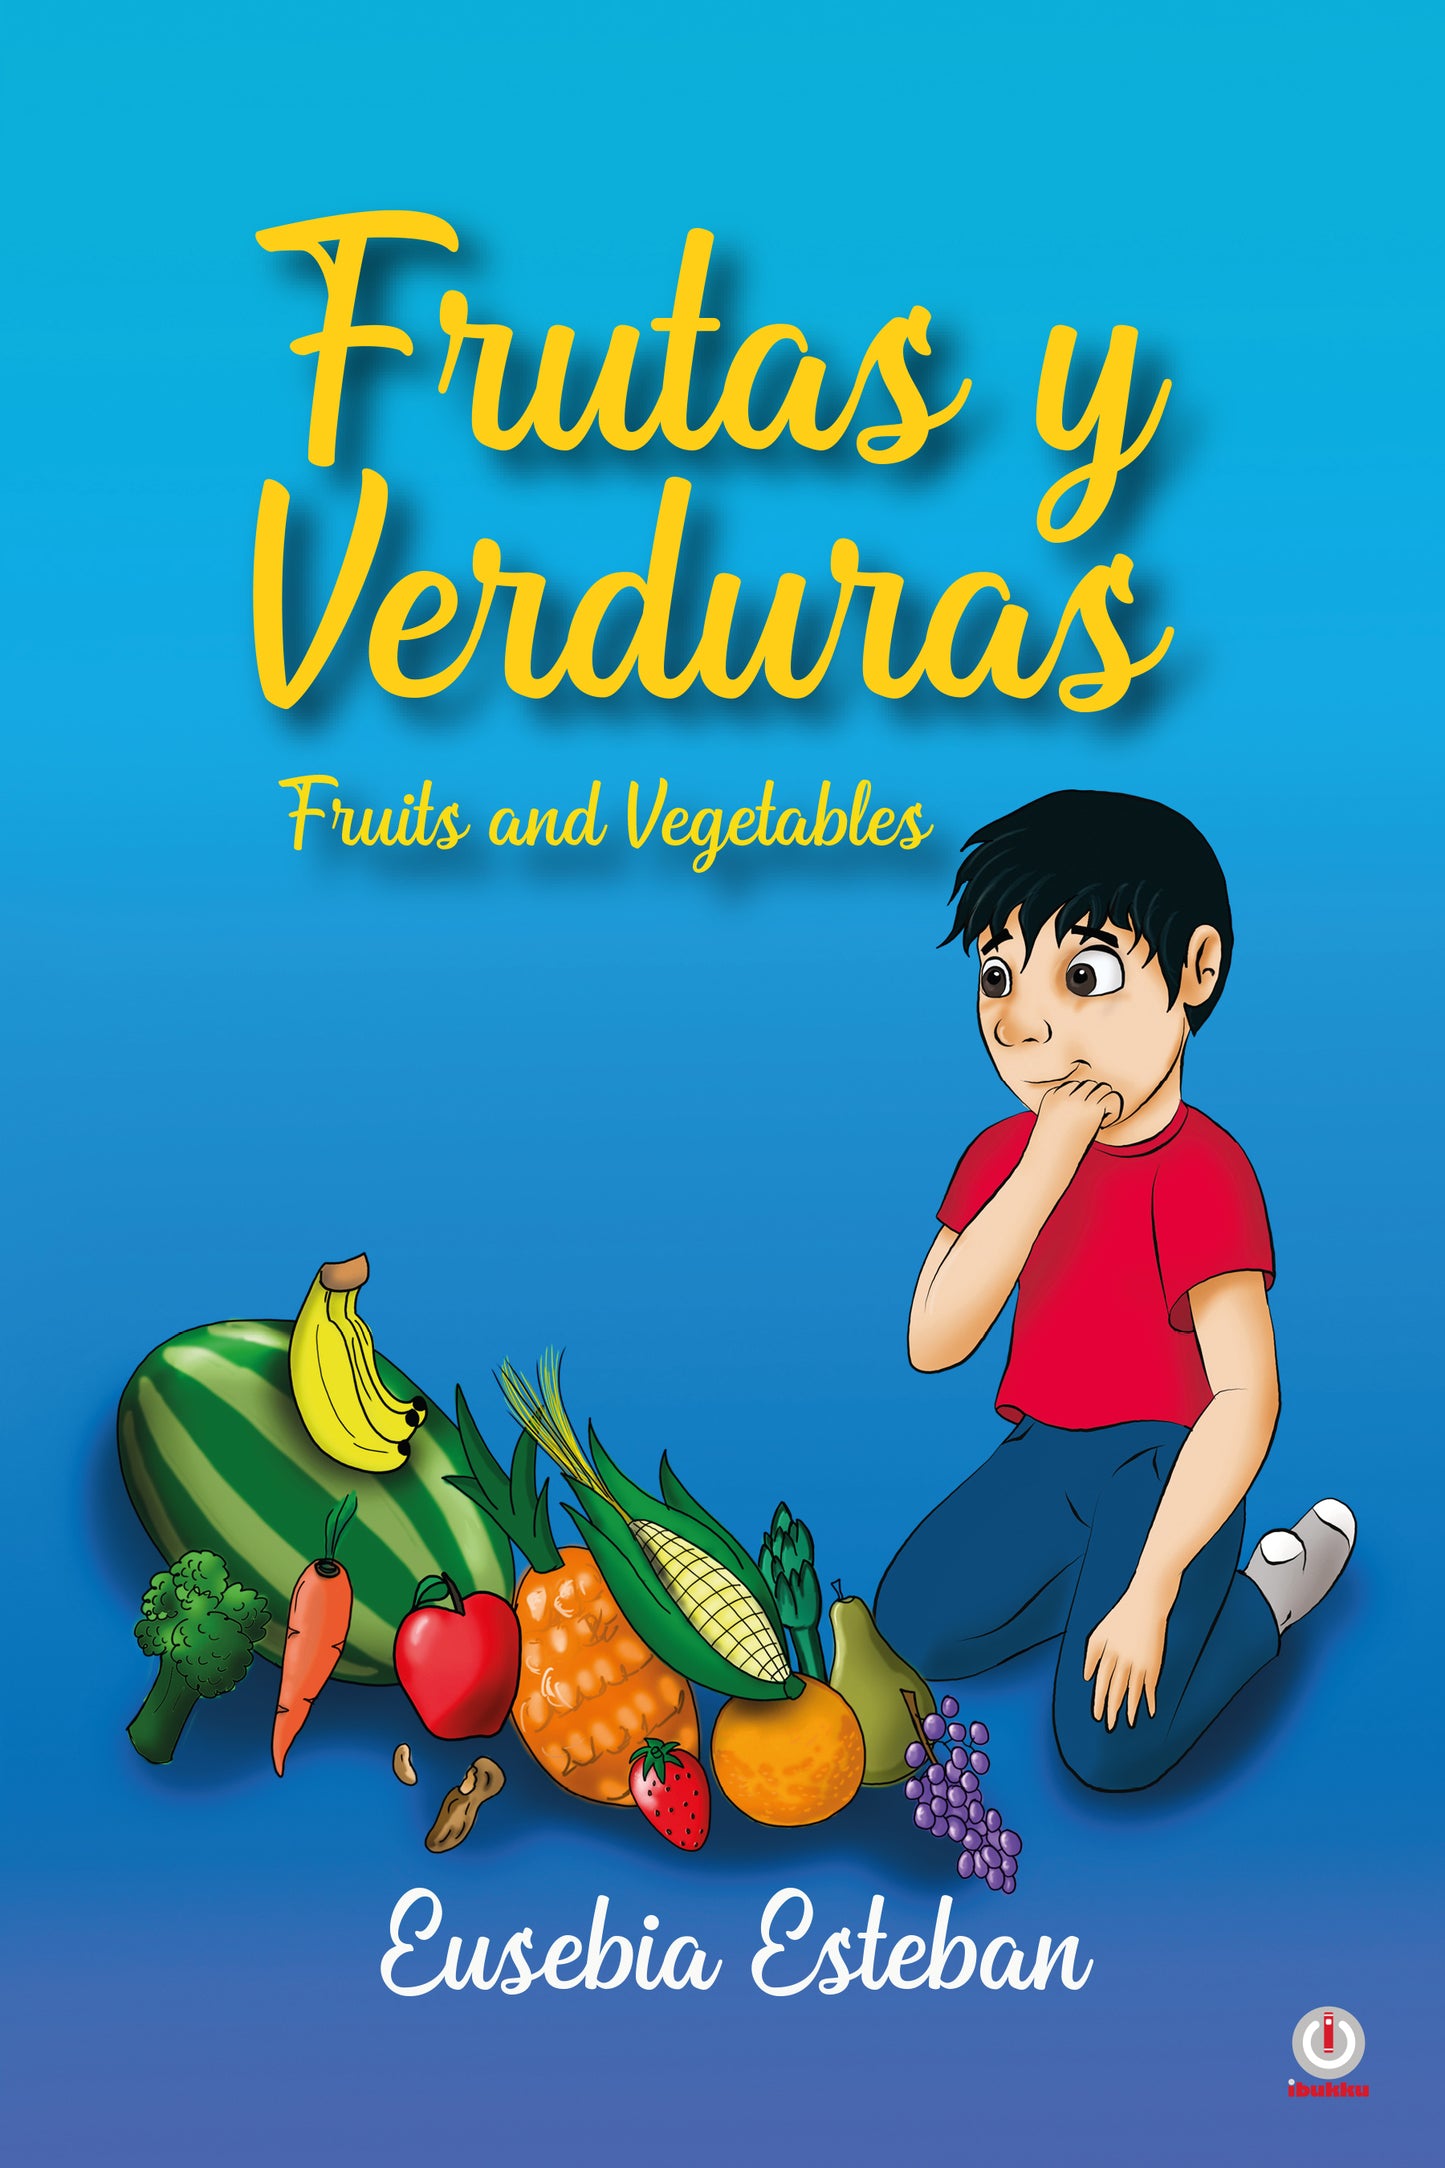 Frutas y verduras: Fruits and Vegetables (Impreso)